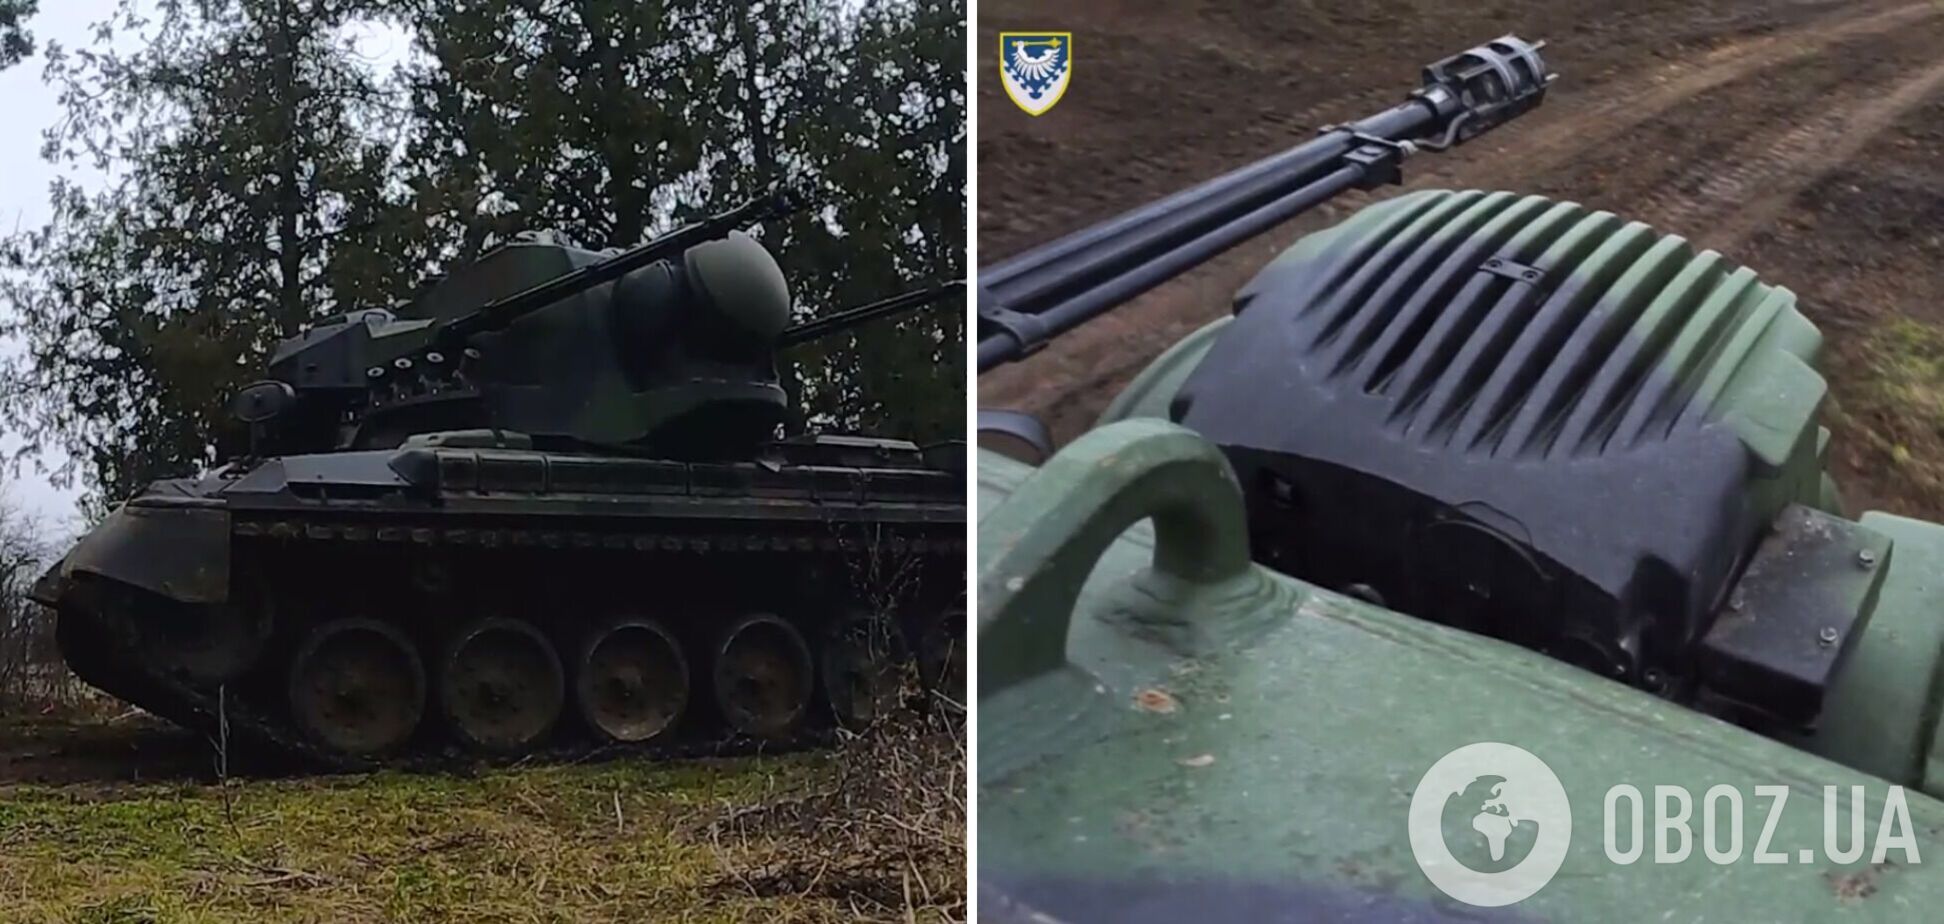 Українські воїни розповіли про бойове застосування Gepard